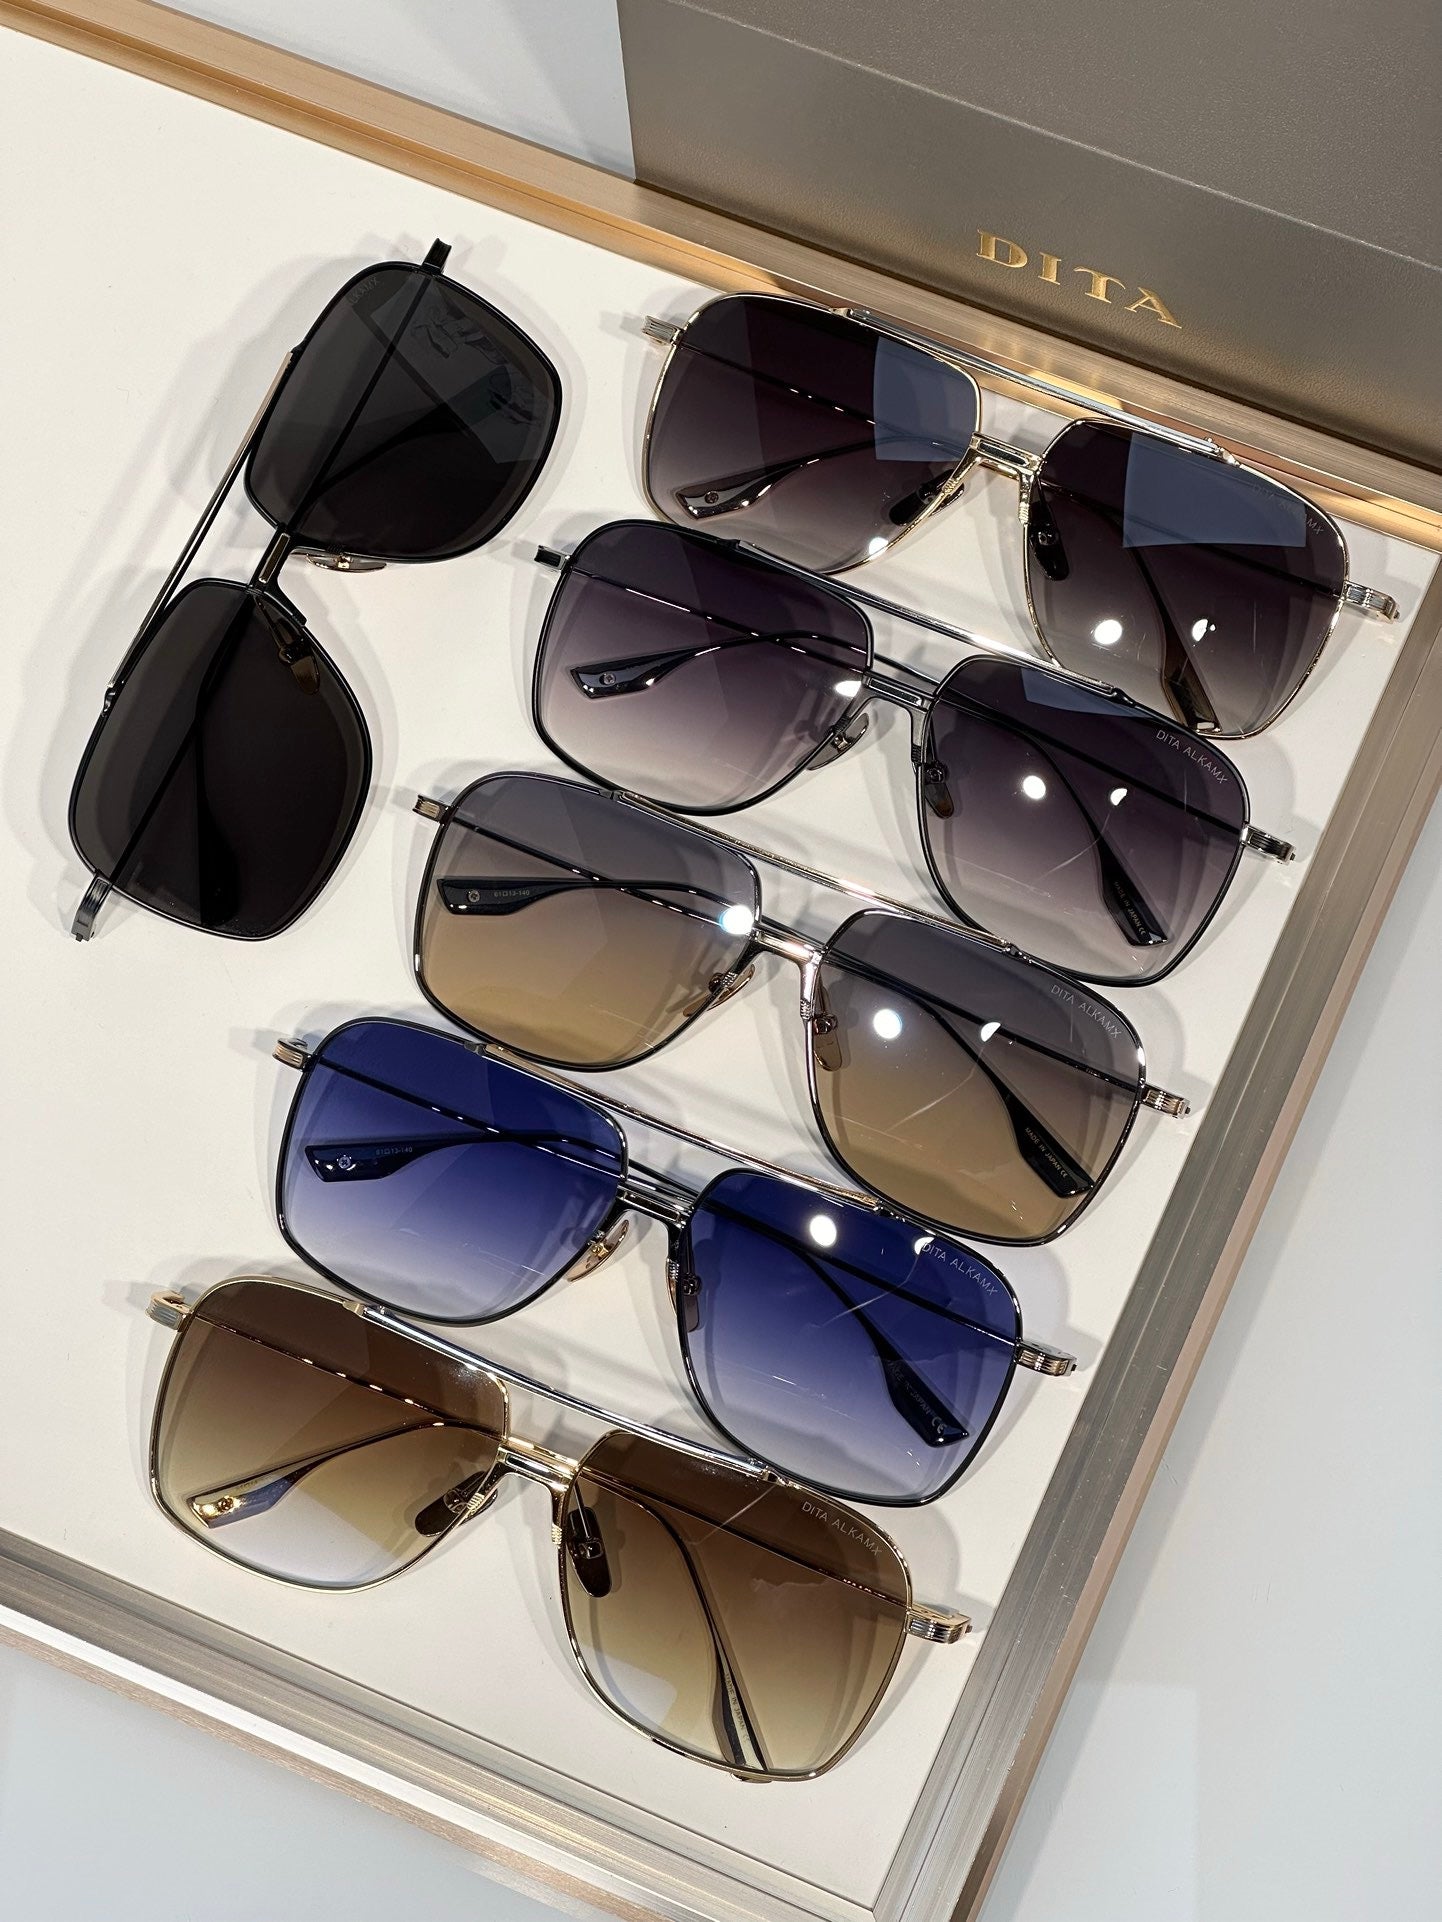 DITA Eyewear ALKAMX DTS100-A-04 POLARIZED Unisex Sunglasses 🔱 - buyonlinebehappy